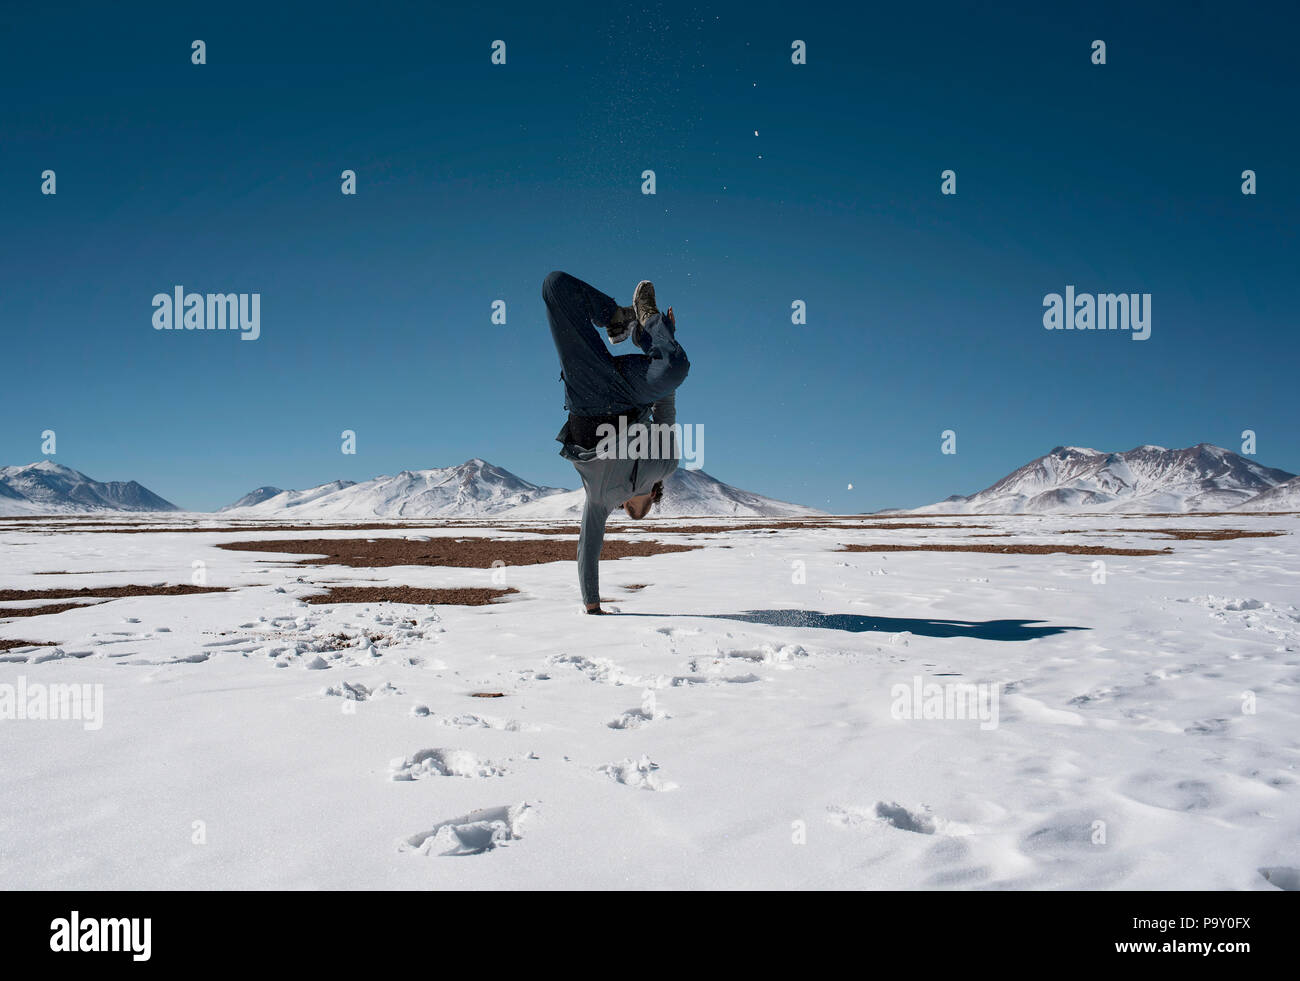 Ragazzo in piedi su una mano nella neve (Chiguana deserto di vulcani in background), Bolivia. Foto Stock